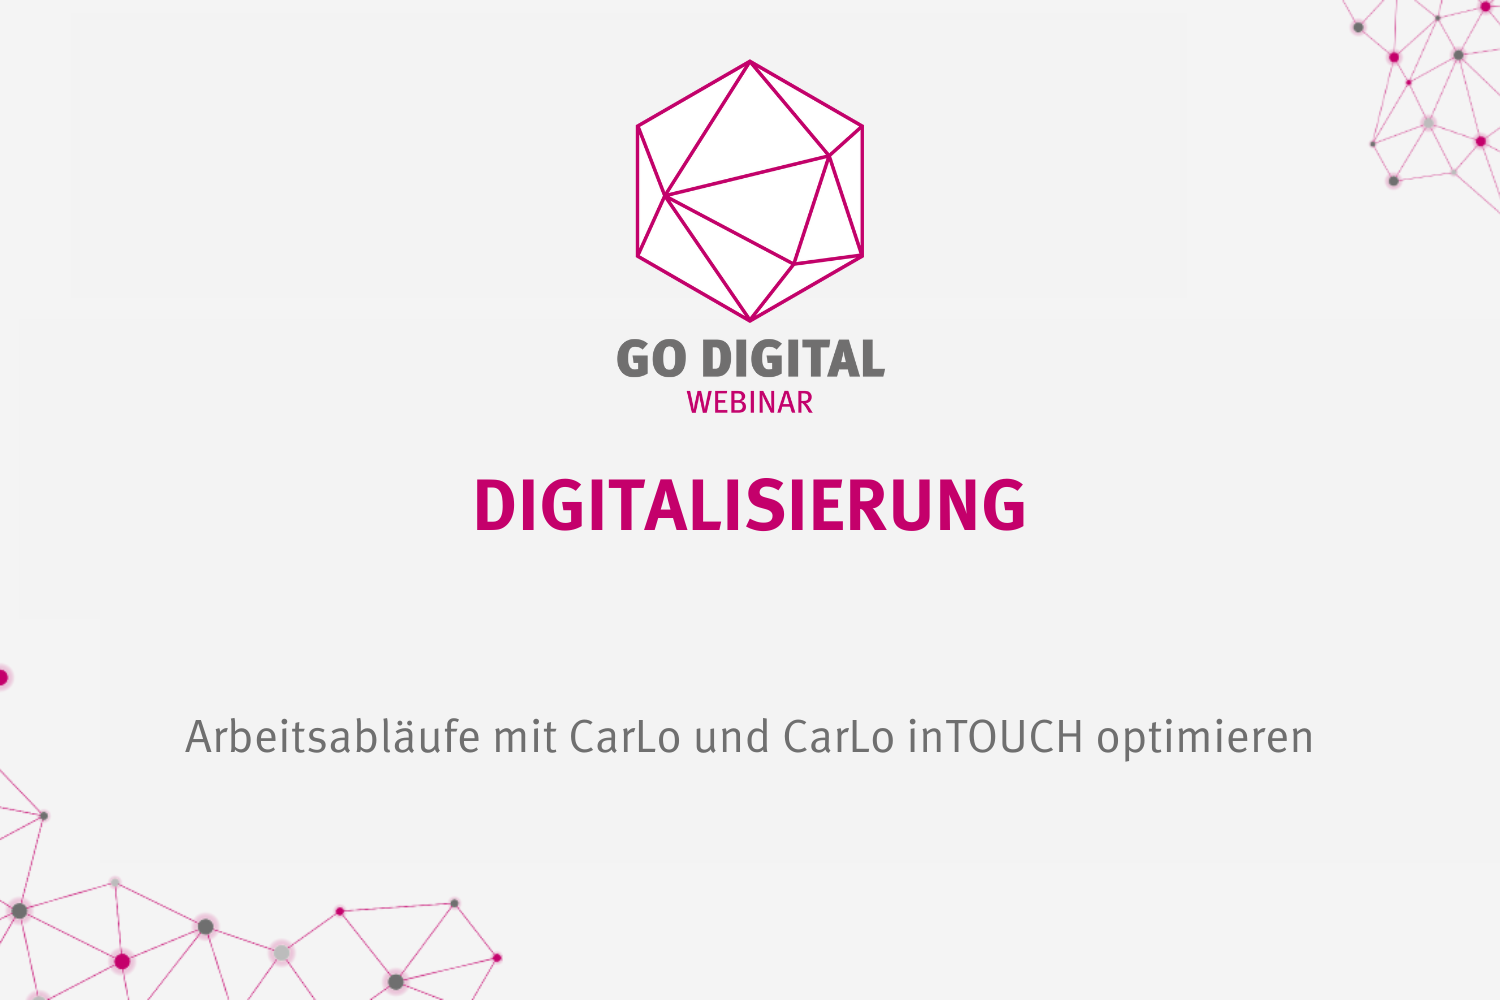 GO DIGITAL: Digitalisierung